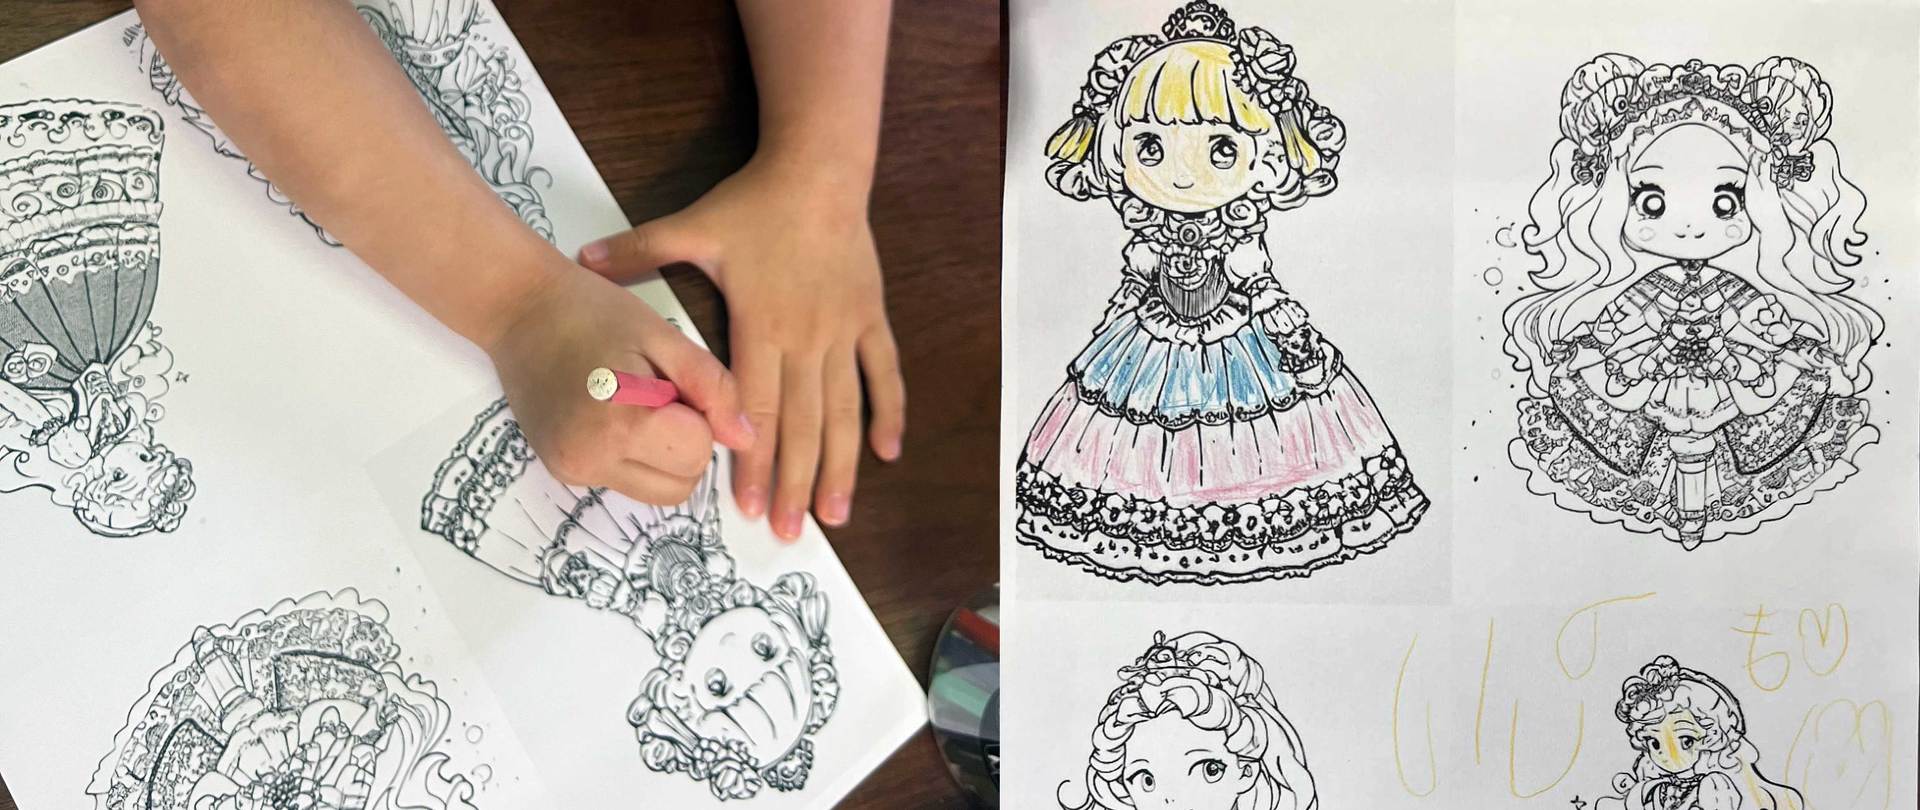 お絵かきai 育児で活躍 無限塗り絵 に4歳も夢中 Itmedia News